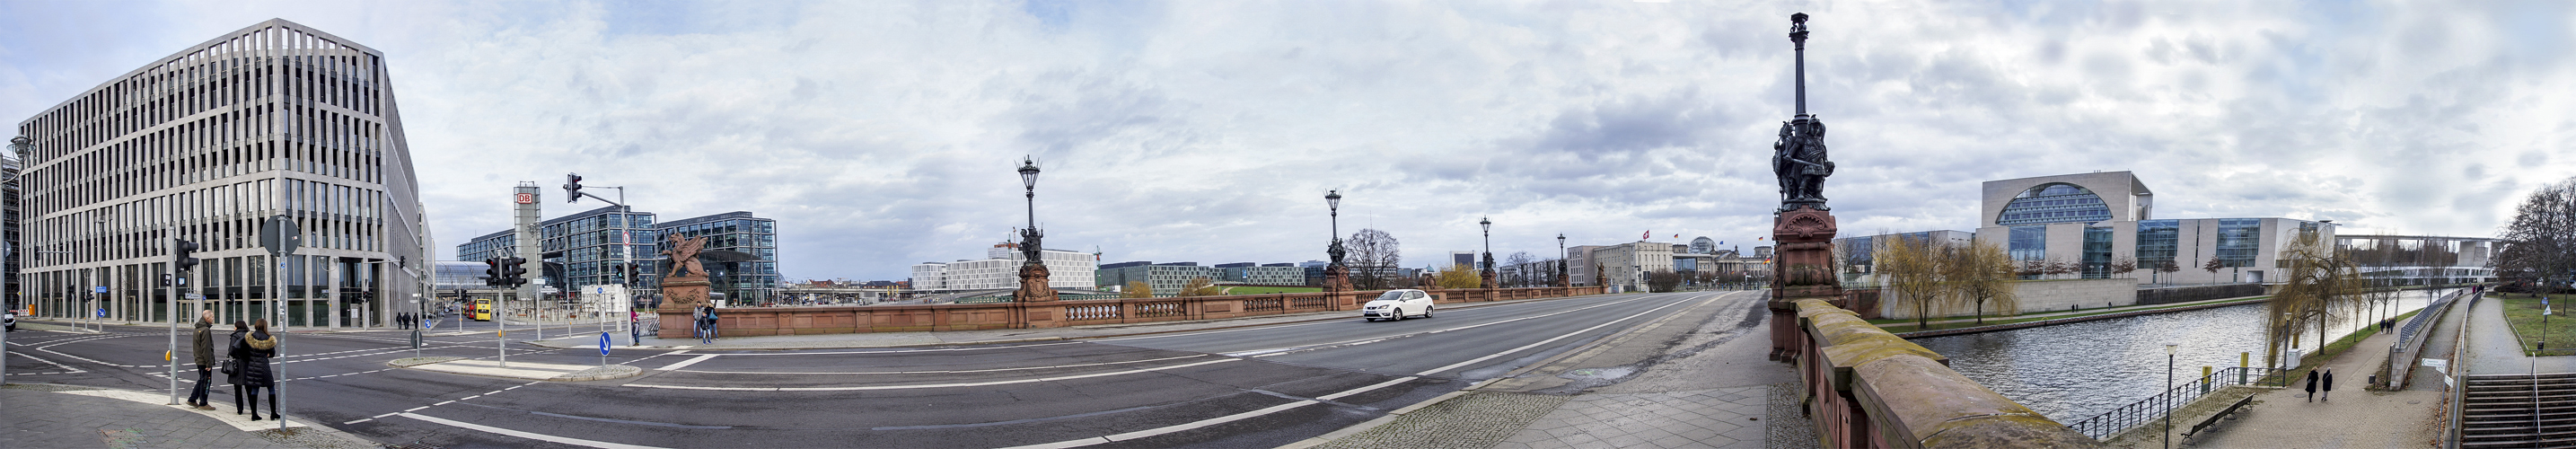 Moltkebrücke Berlin